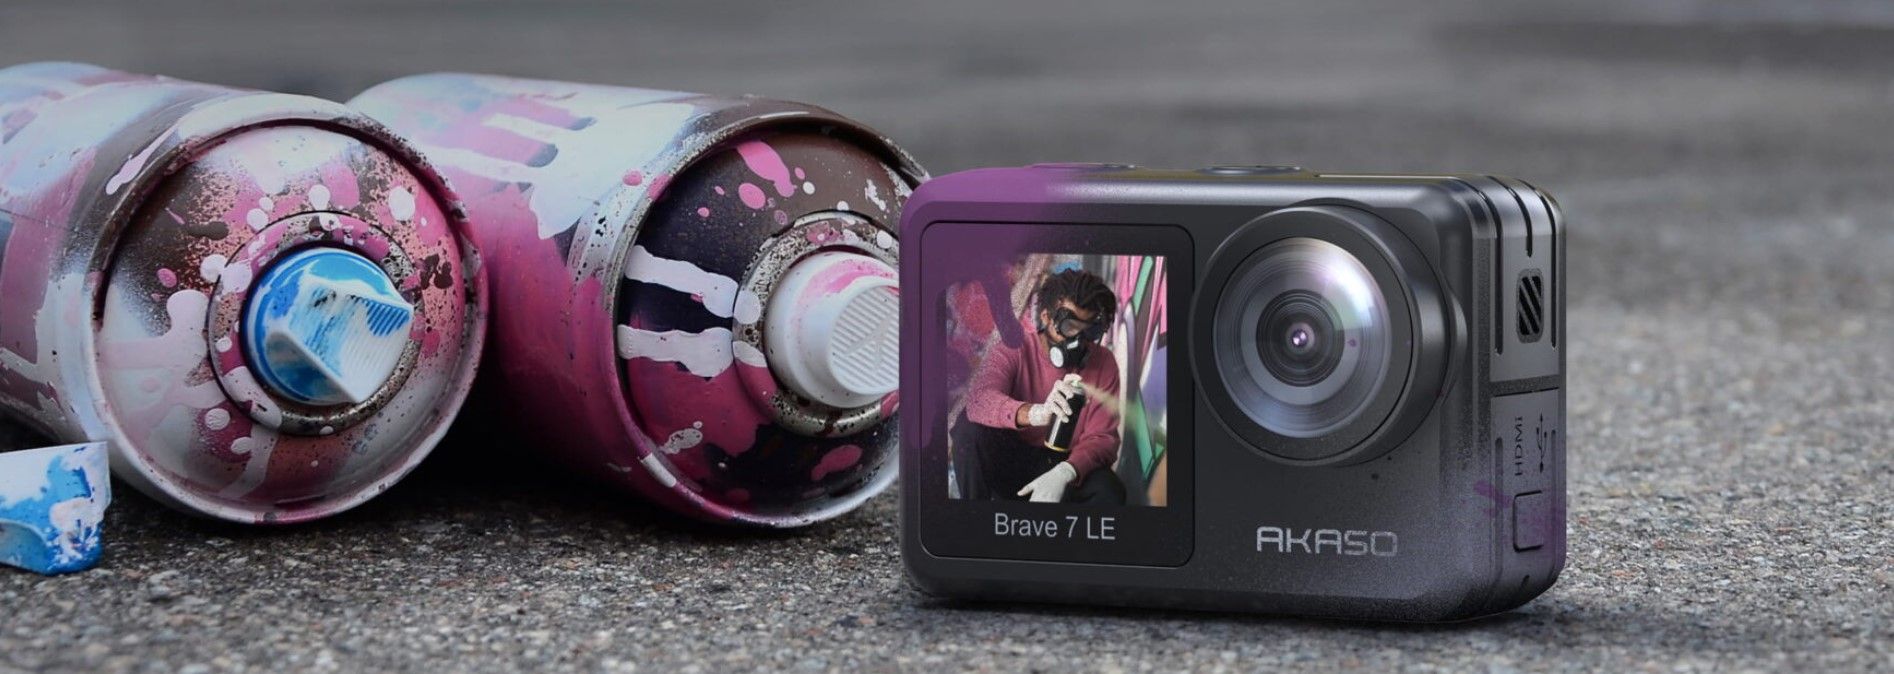 moderní akční kamera akaso brave 7 le krásné fotografie vysoce kvalitní videa různé režimy nabíjecí baterie vysoká odolnost